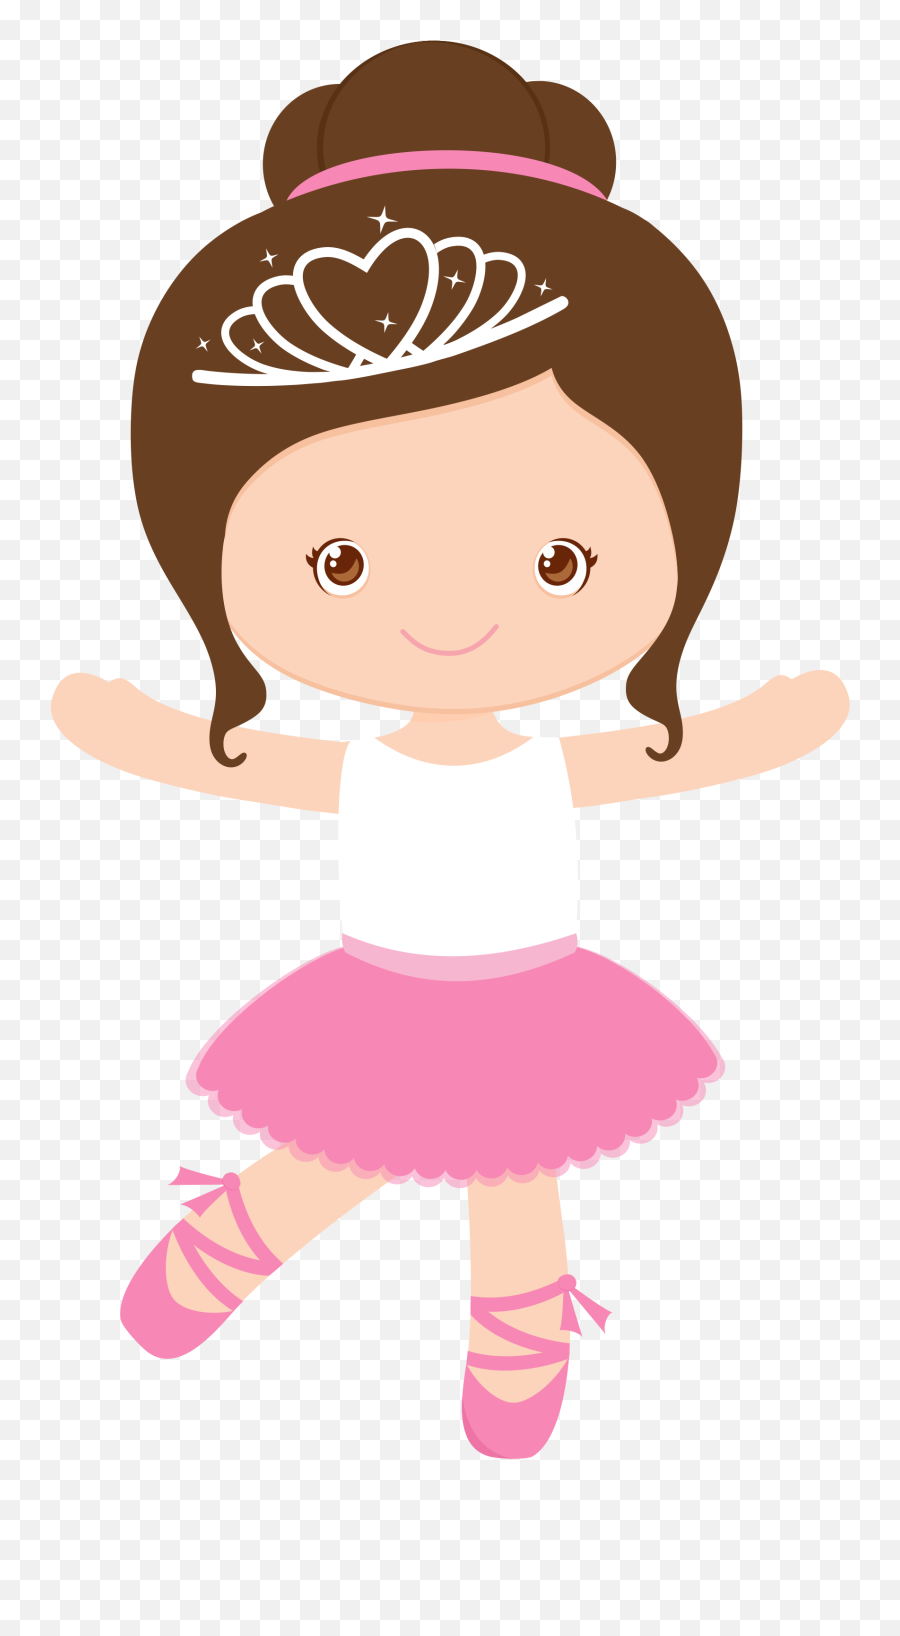 Ballet Dancer Clipart At Getdrawings - Bailarina Bebe Desenho Emoji,Dancer Clipart